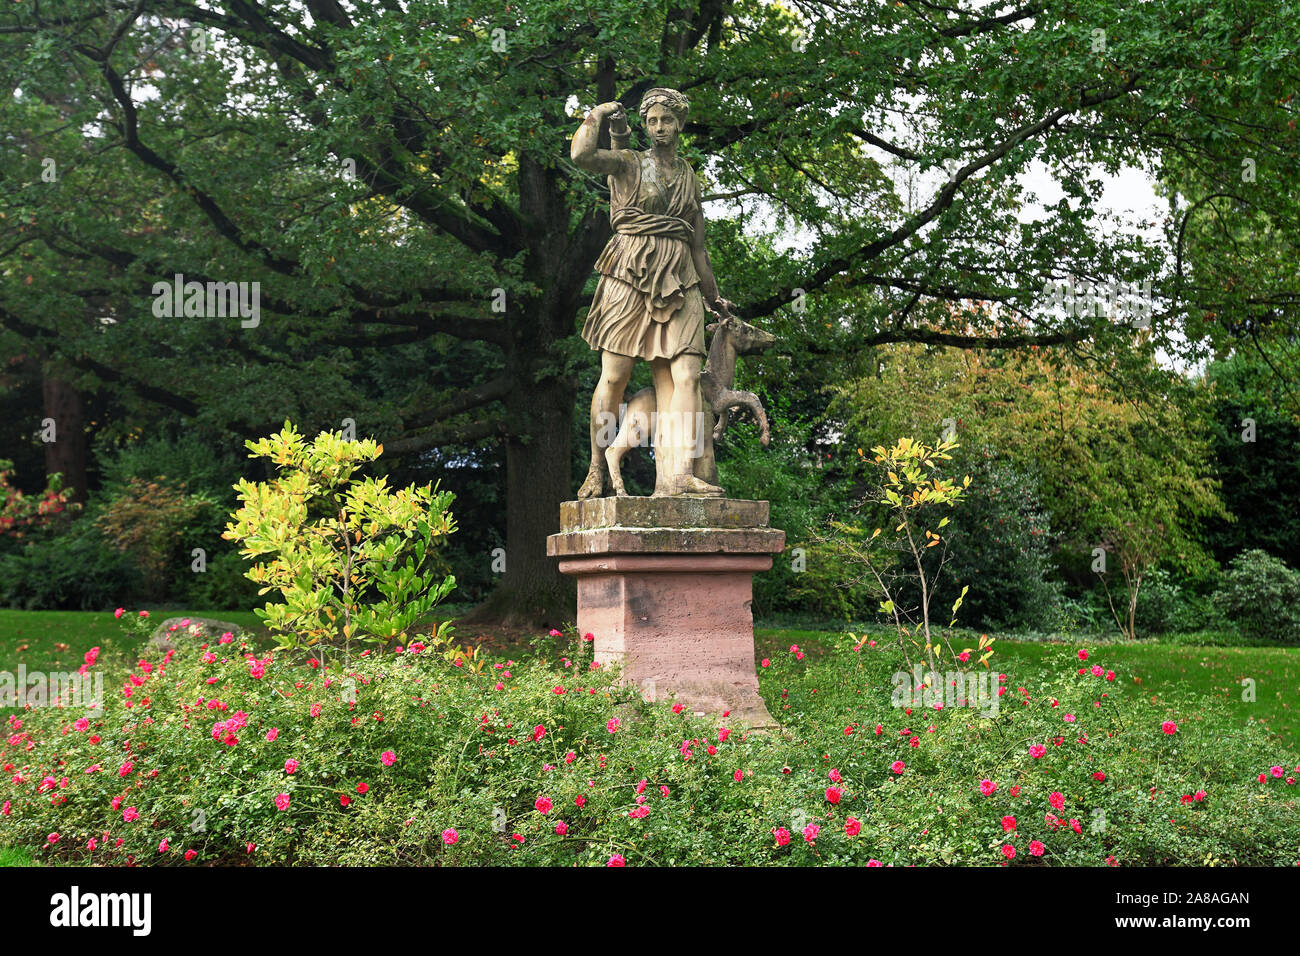 La scultura romana di dea della caccia, luna e natura Diana raggiungendo per un fremito nel giardino di un palazzo nella città di Weinheim Foto Stock